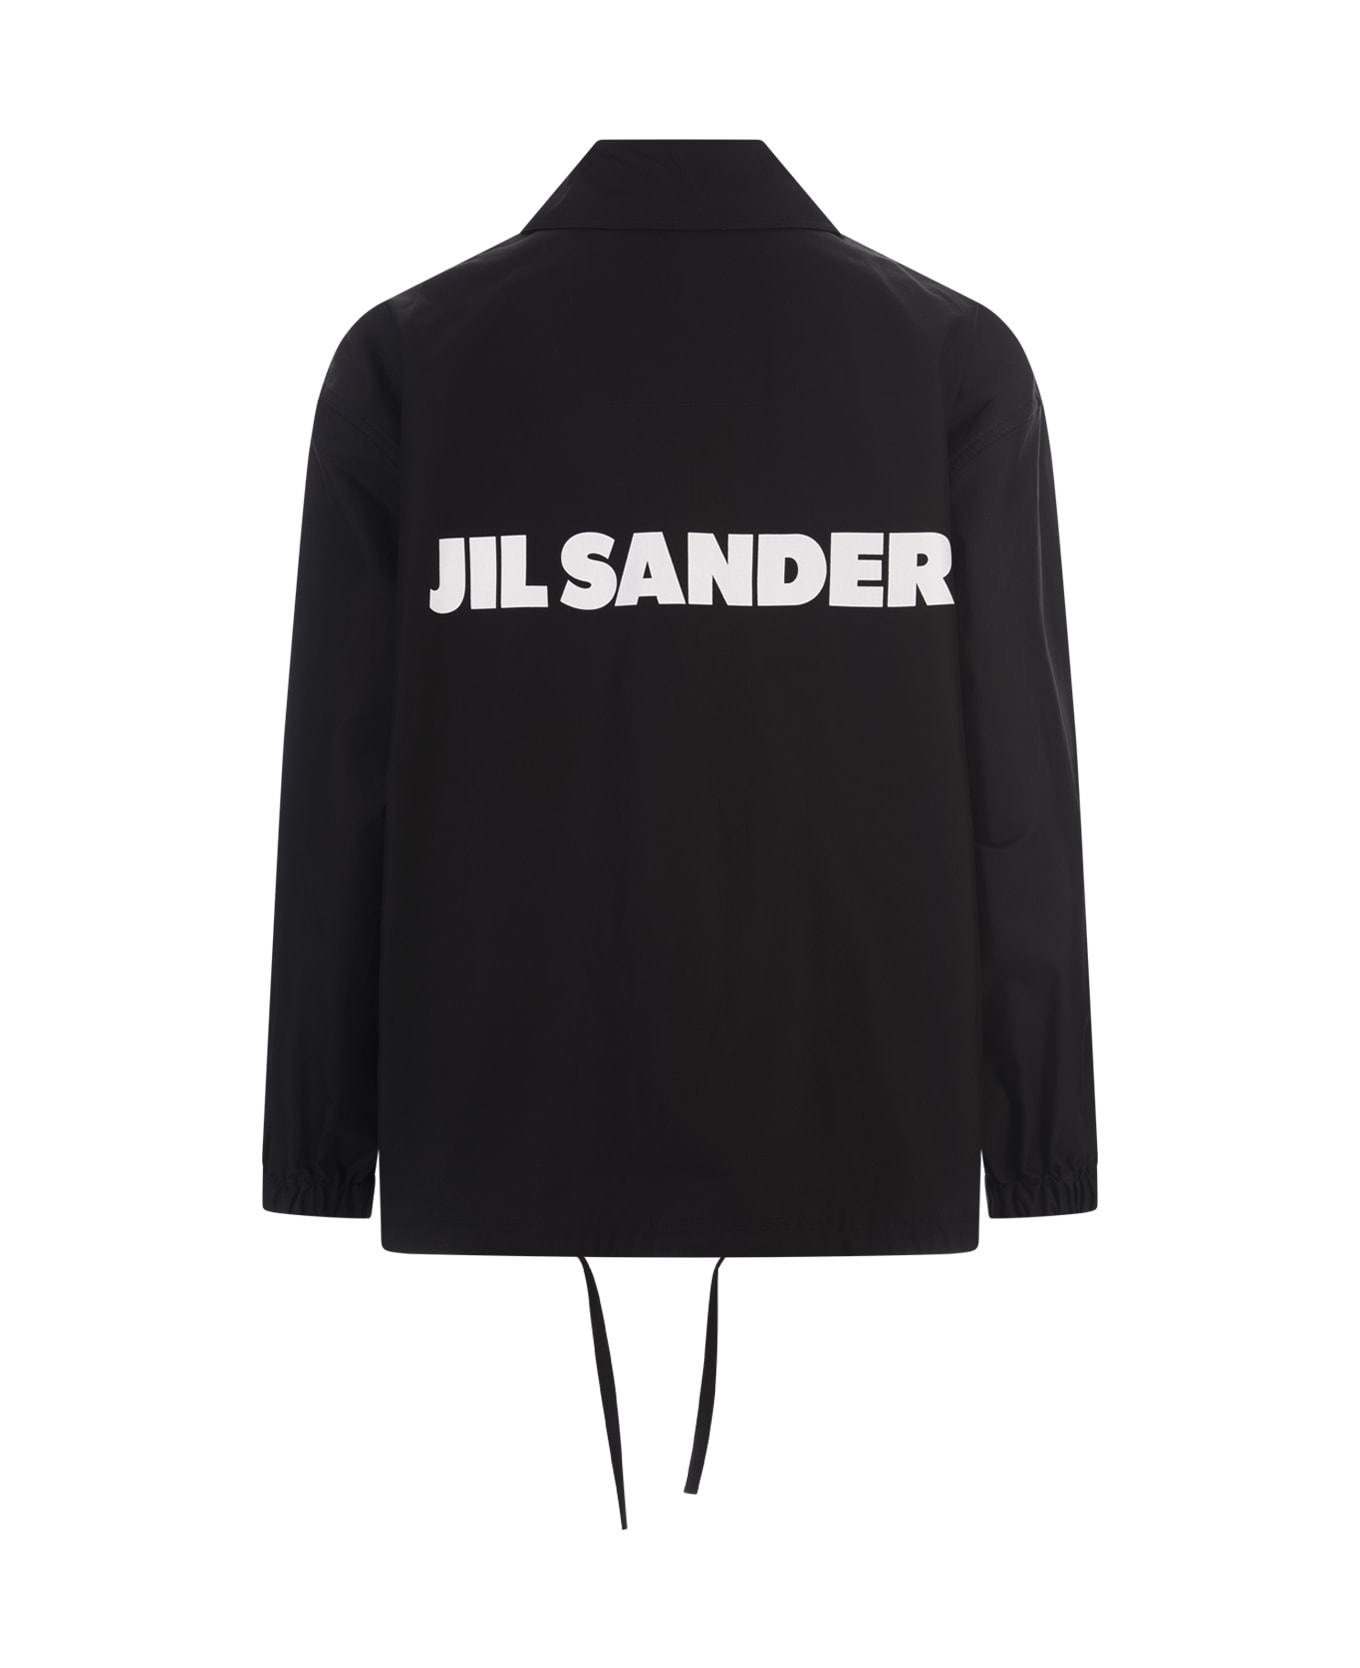 Jil Sander Black Jacket With Logo - Black